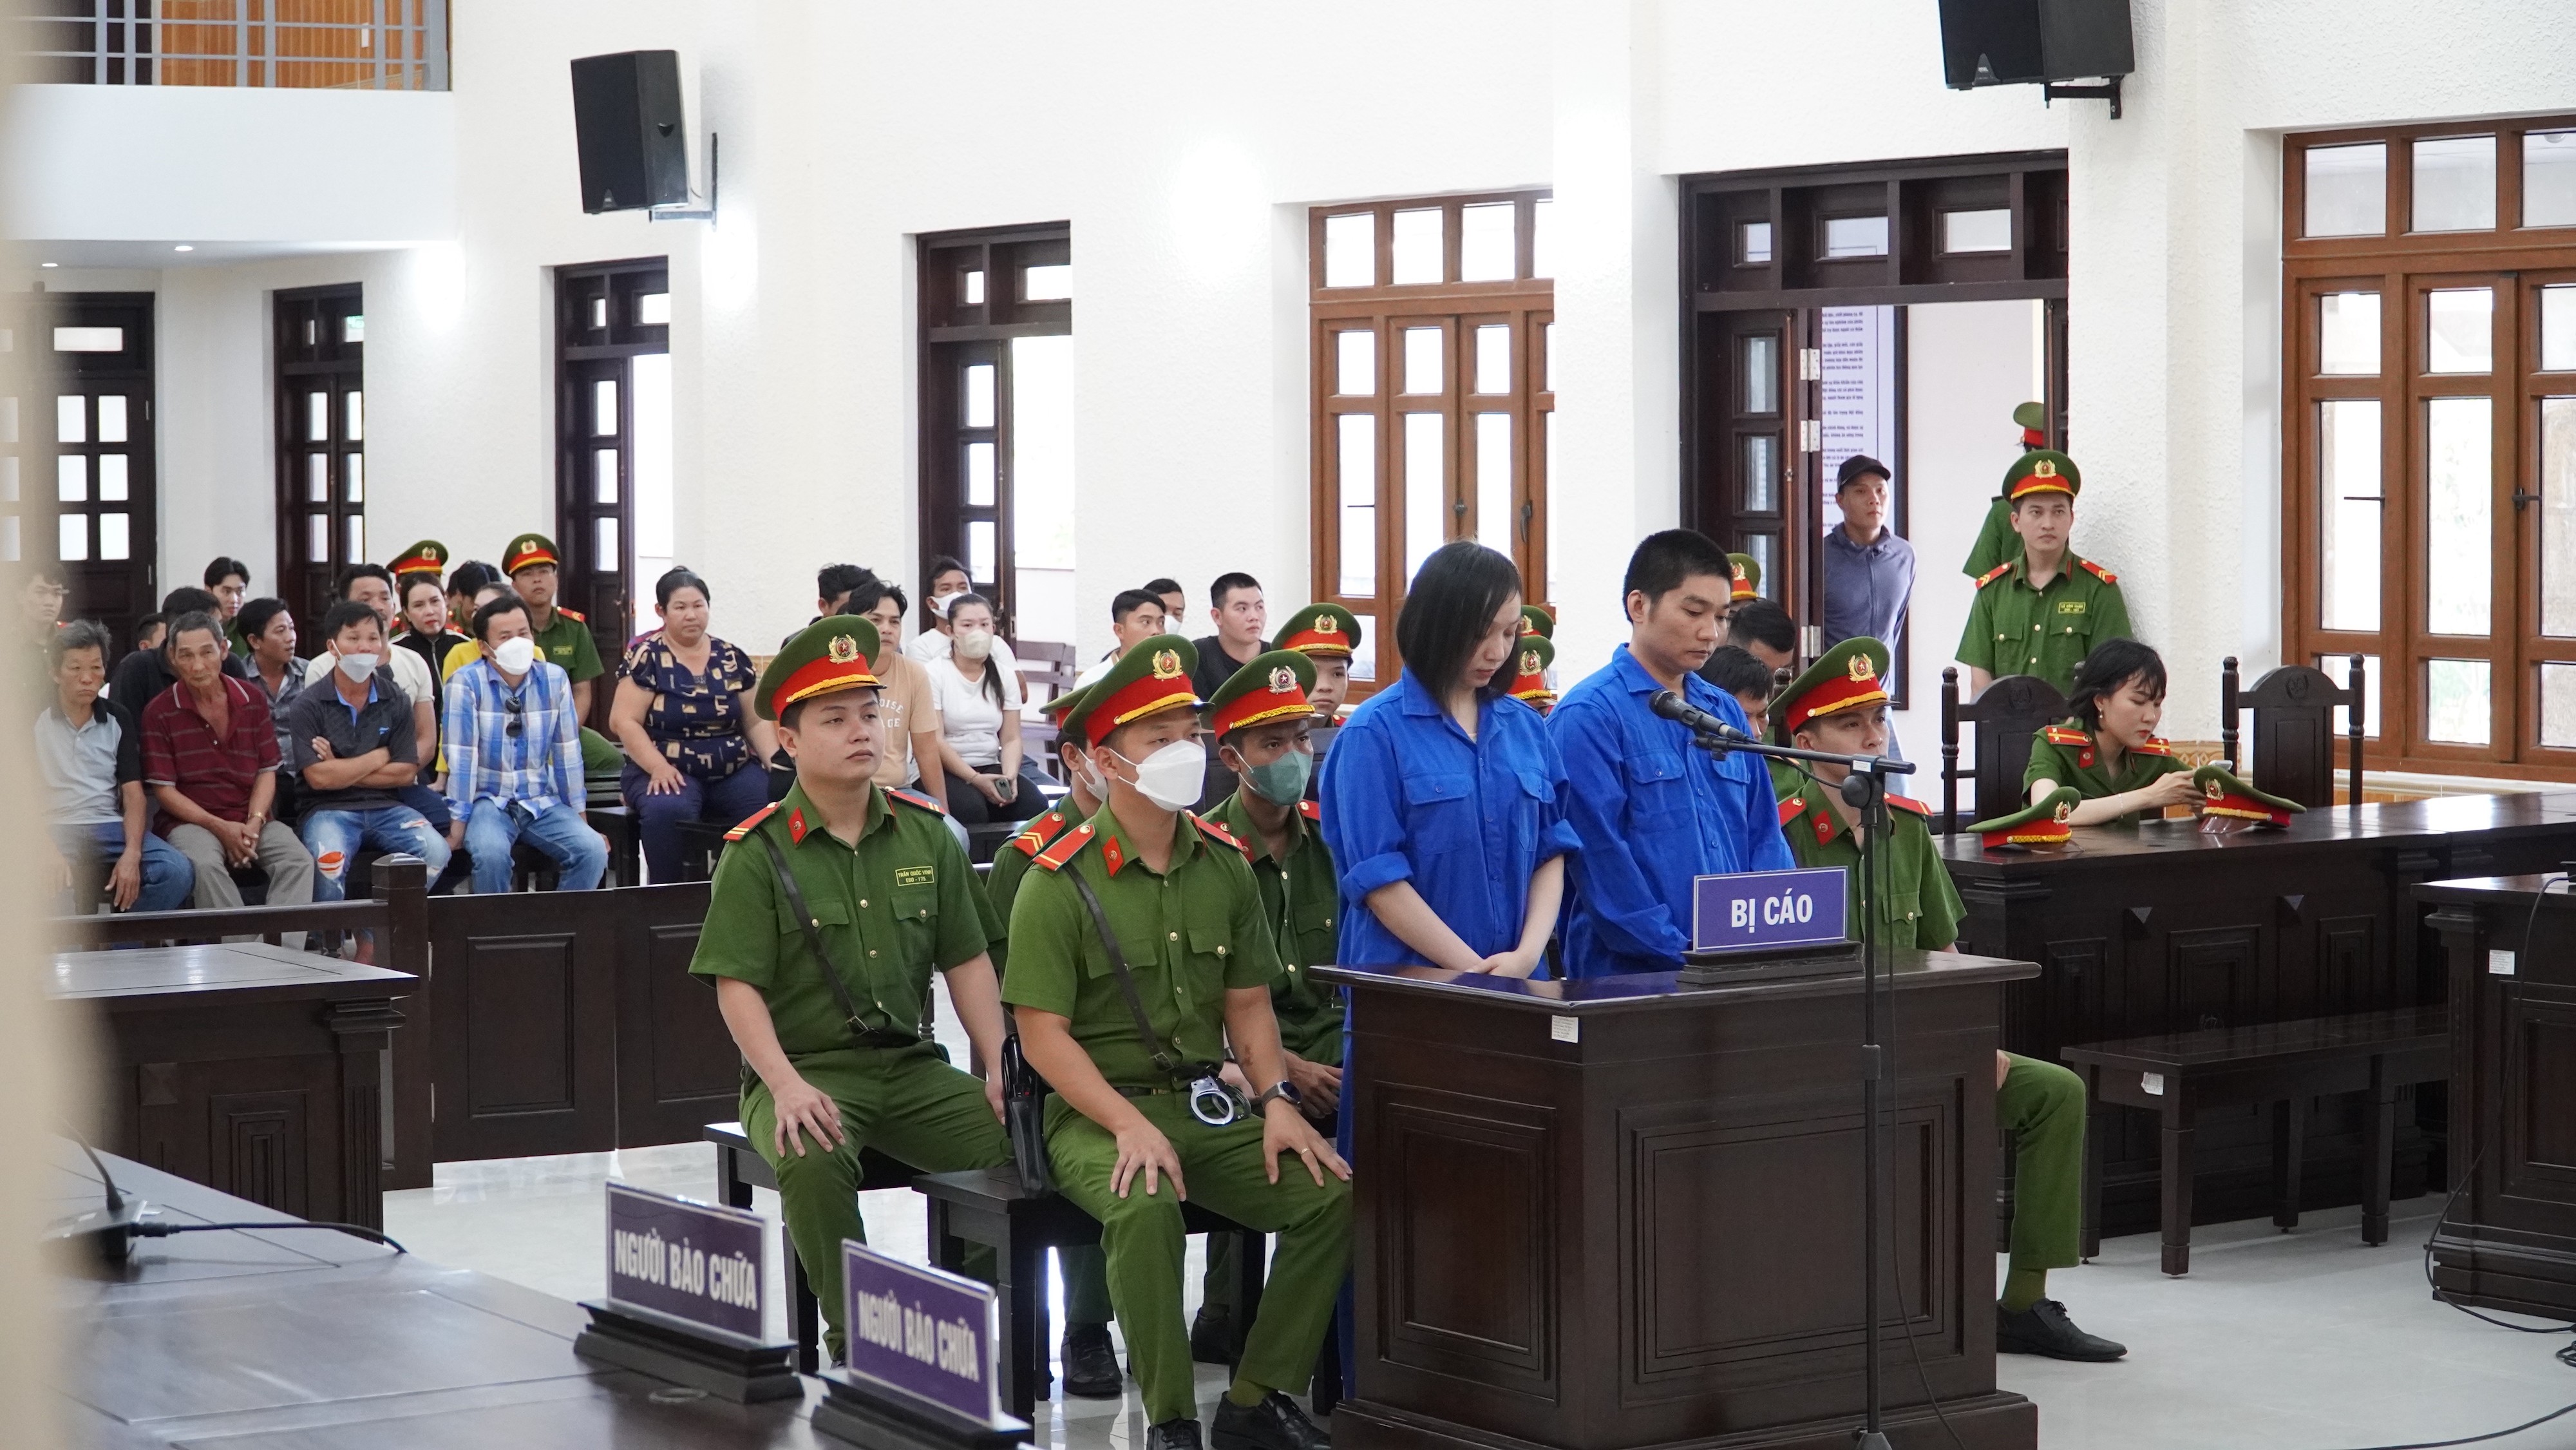 Hồ sơ điều tra - Bình Thuận: Án chung thân cho đôi nam nữ vận chuyển ma tuý bán kiếmlời (Hình 2).